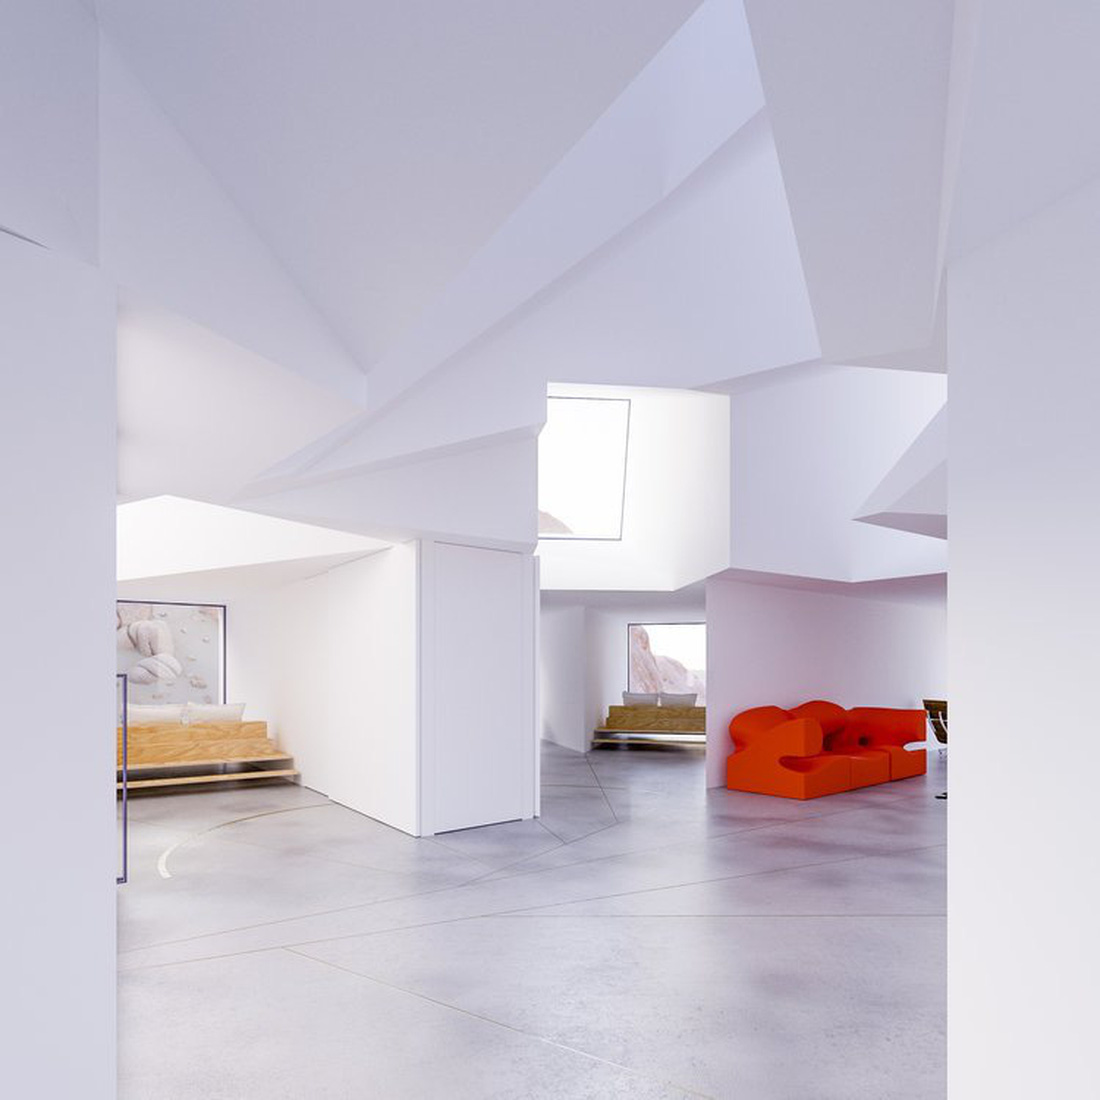 Các không gian sống trong nhà nhìn từ trung tâm - Ảnh: Whitaker Studio